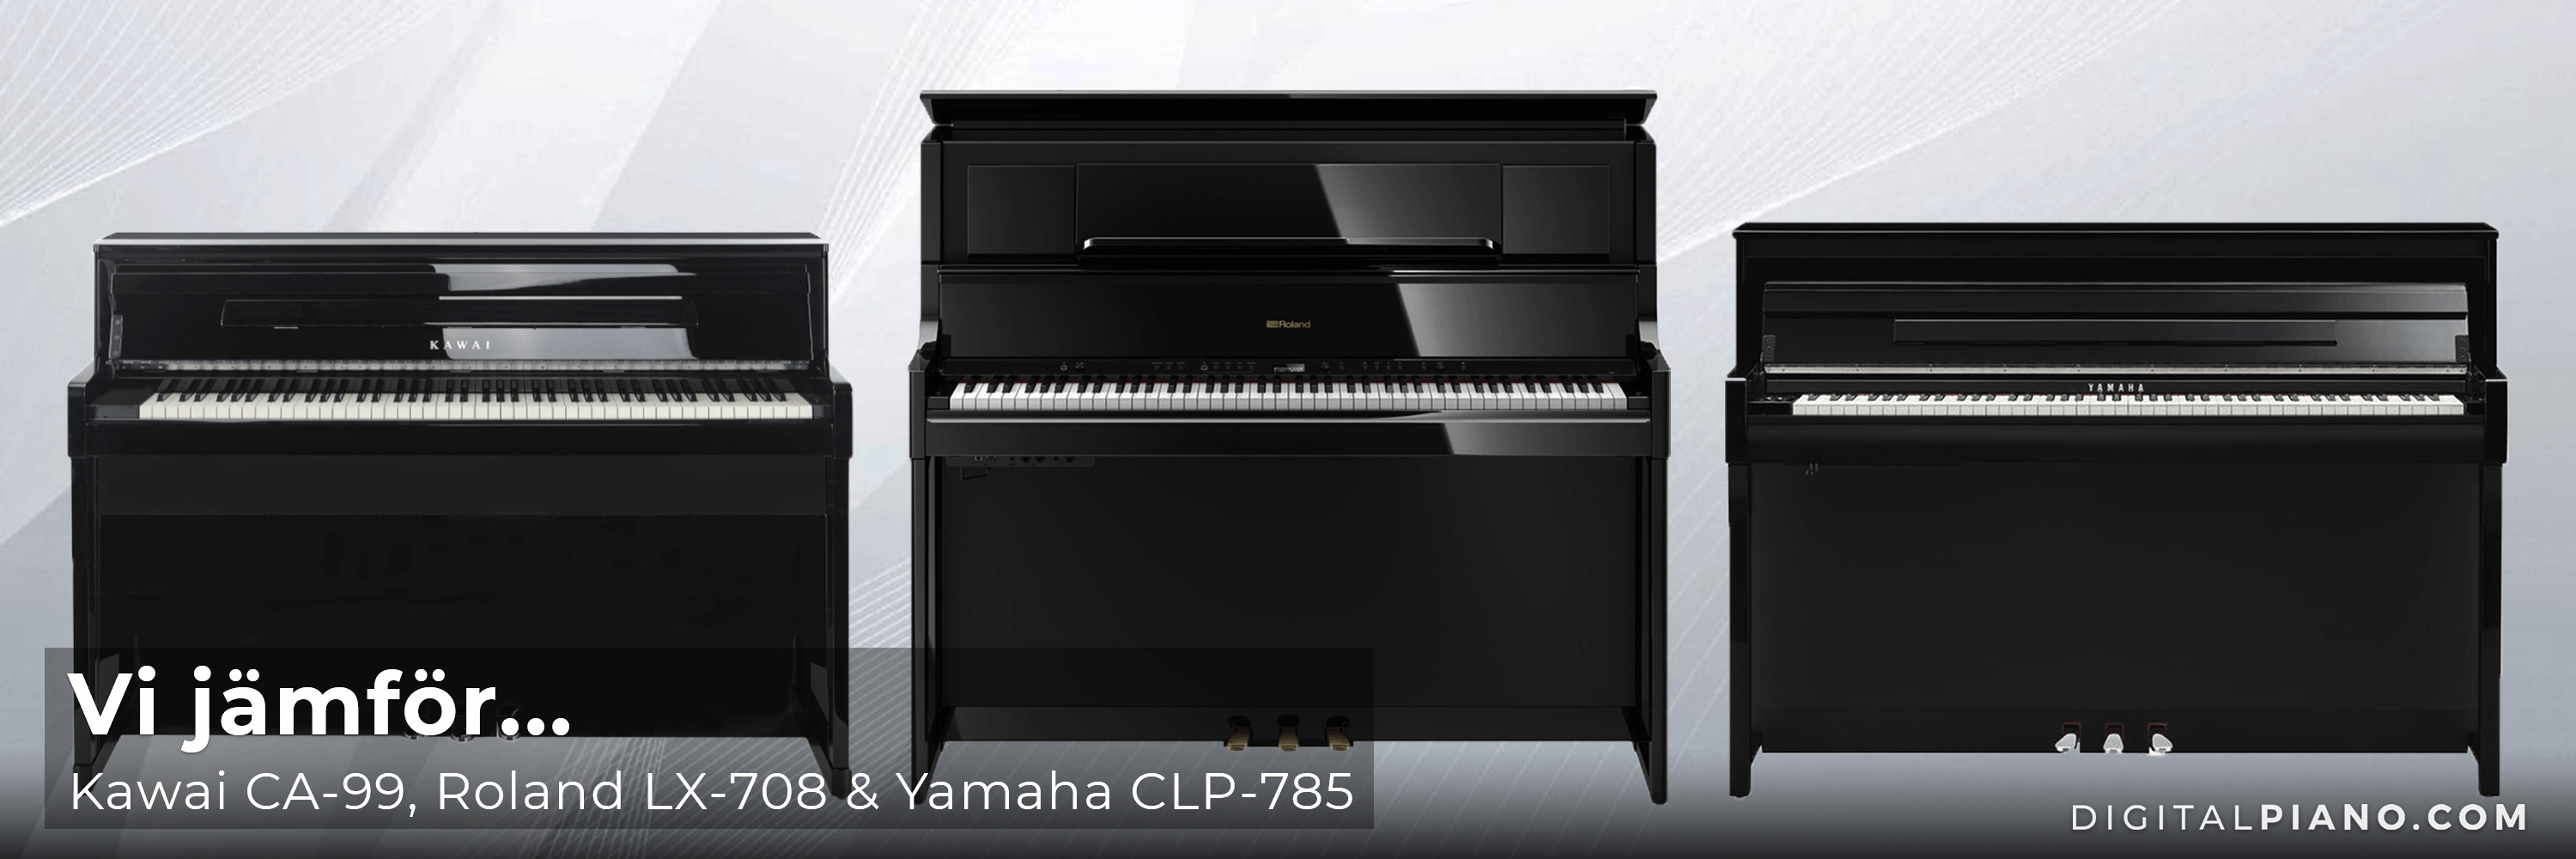 Vi jämför Kawai CA-99, Roland LX-708 och Yamaha CLP-785 